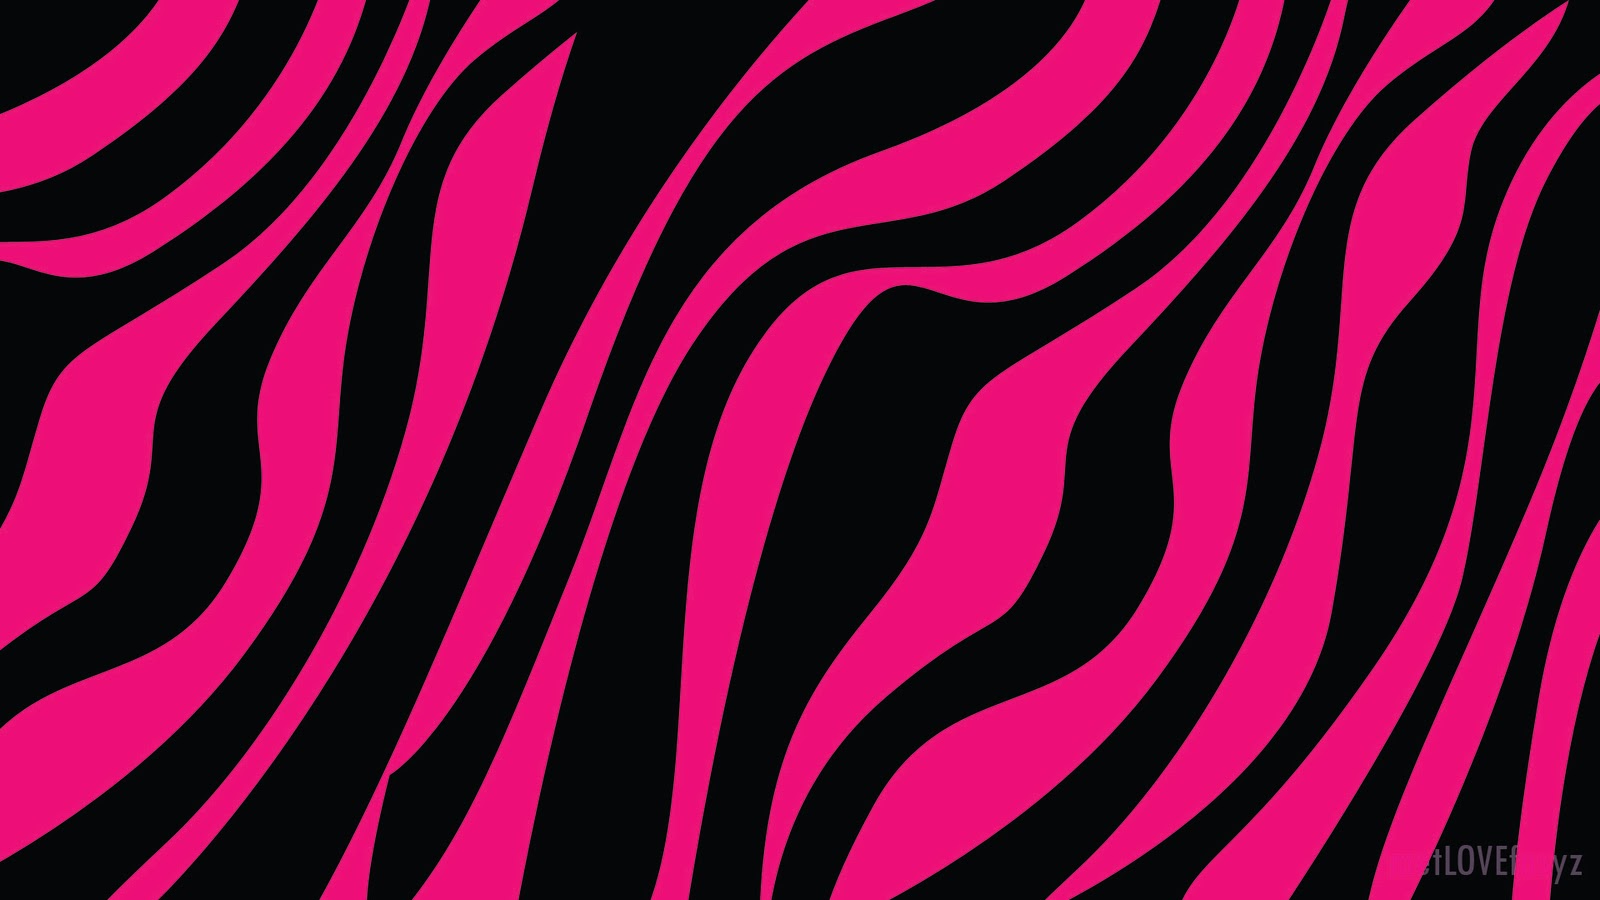 Pink Zebra Images